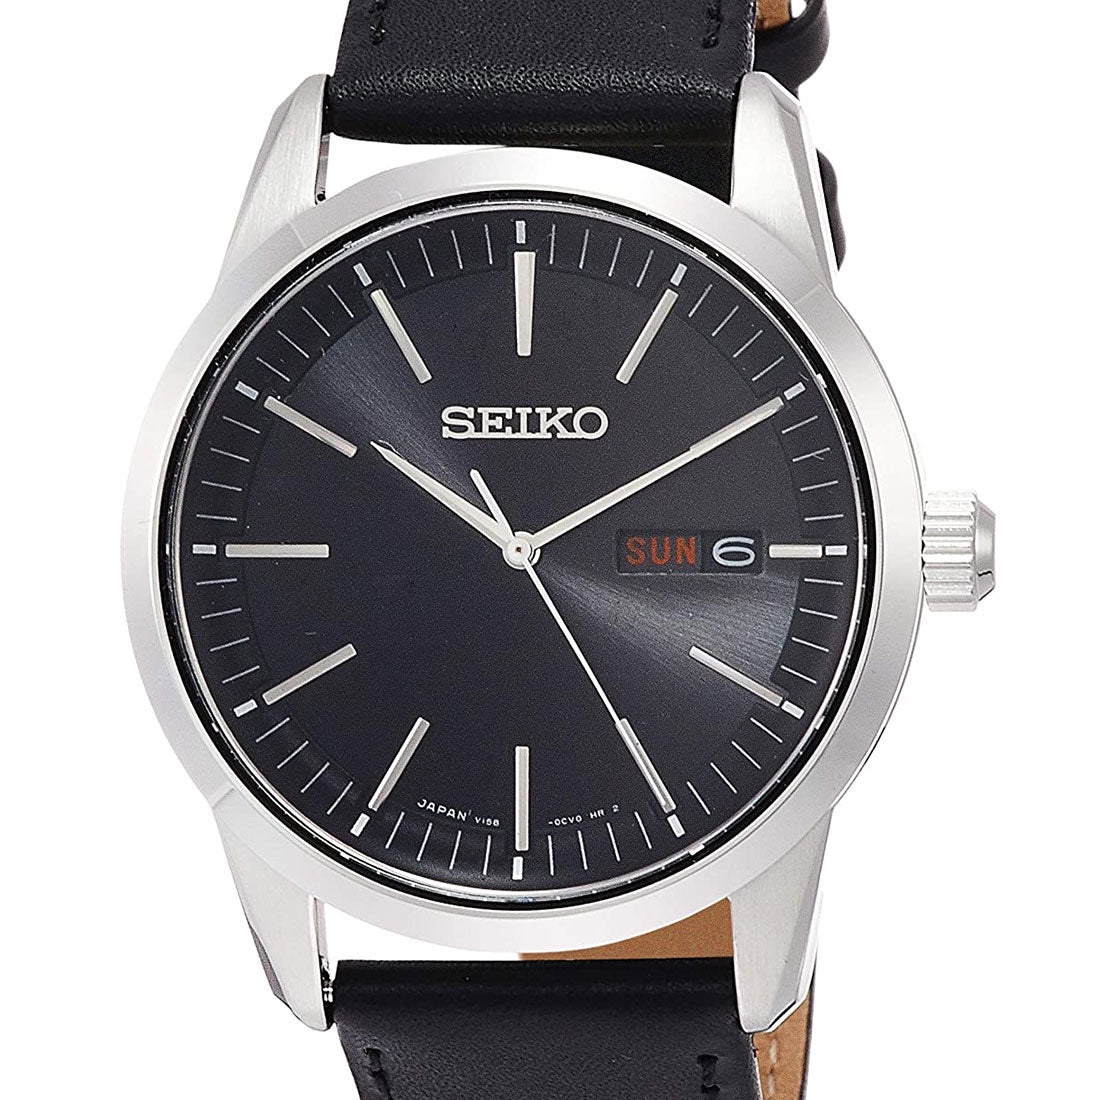 Seiko Selection Solar JDM Watch SBPX123 -Seiko